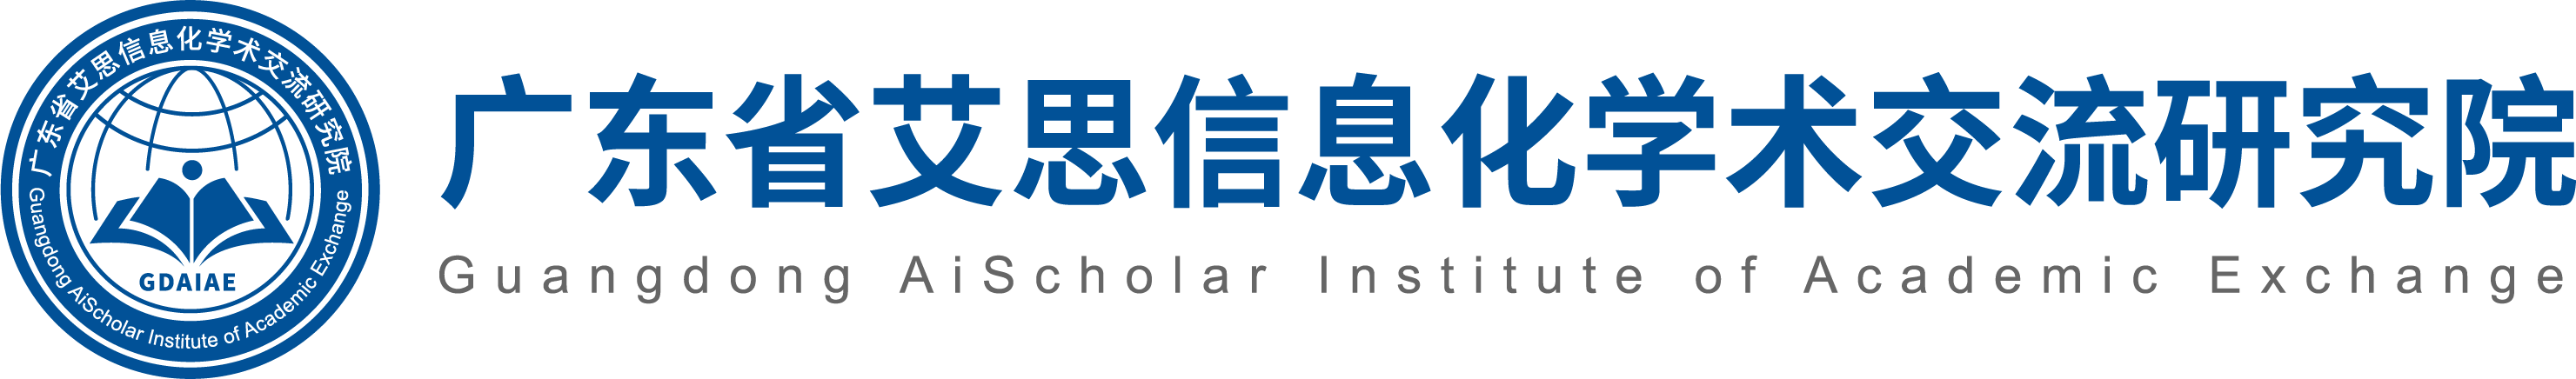 广东省艾思信息化学术交流研究院logo.png